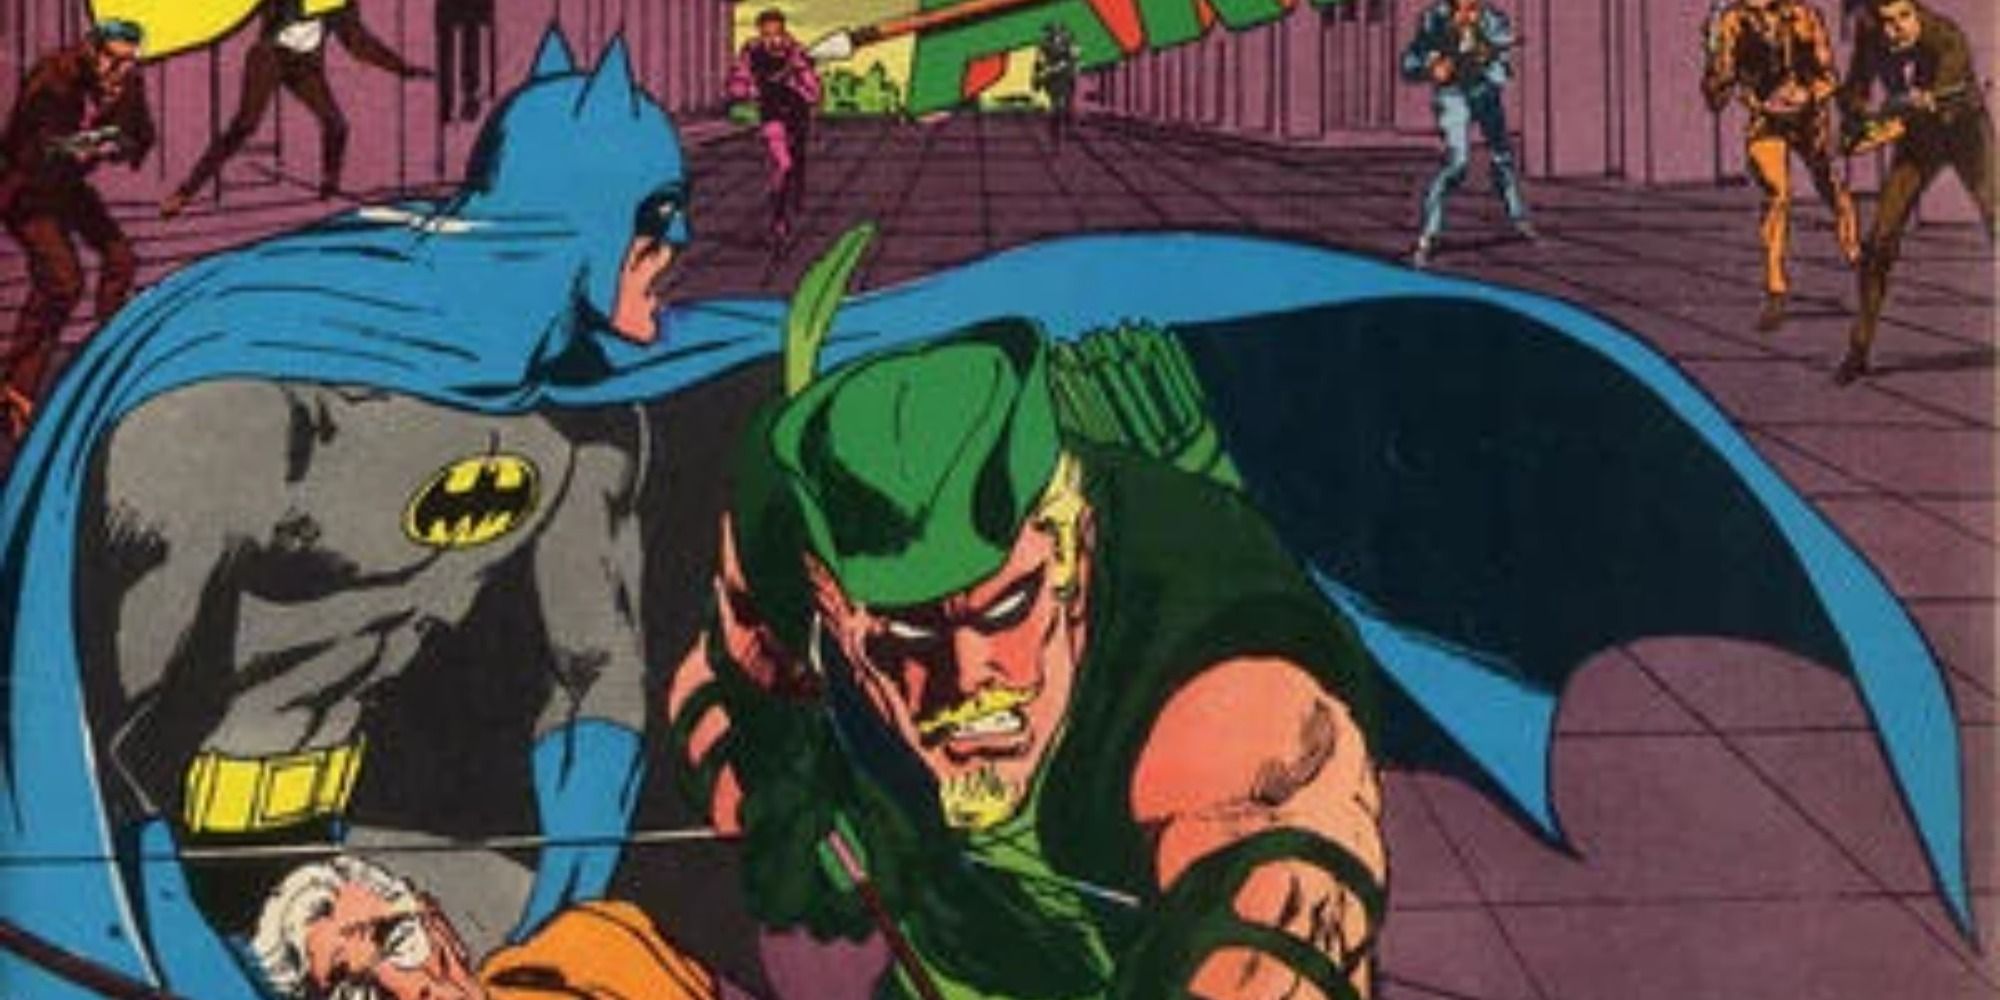 Batman and Green Arrow fight villains in DC Comics.